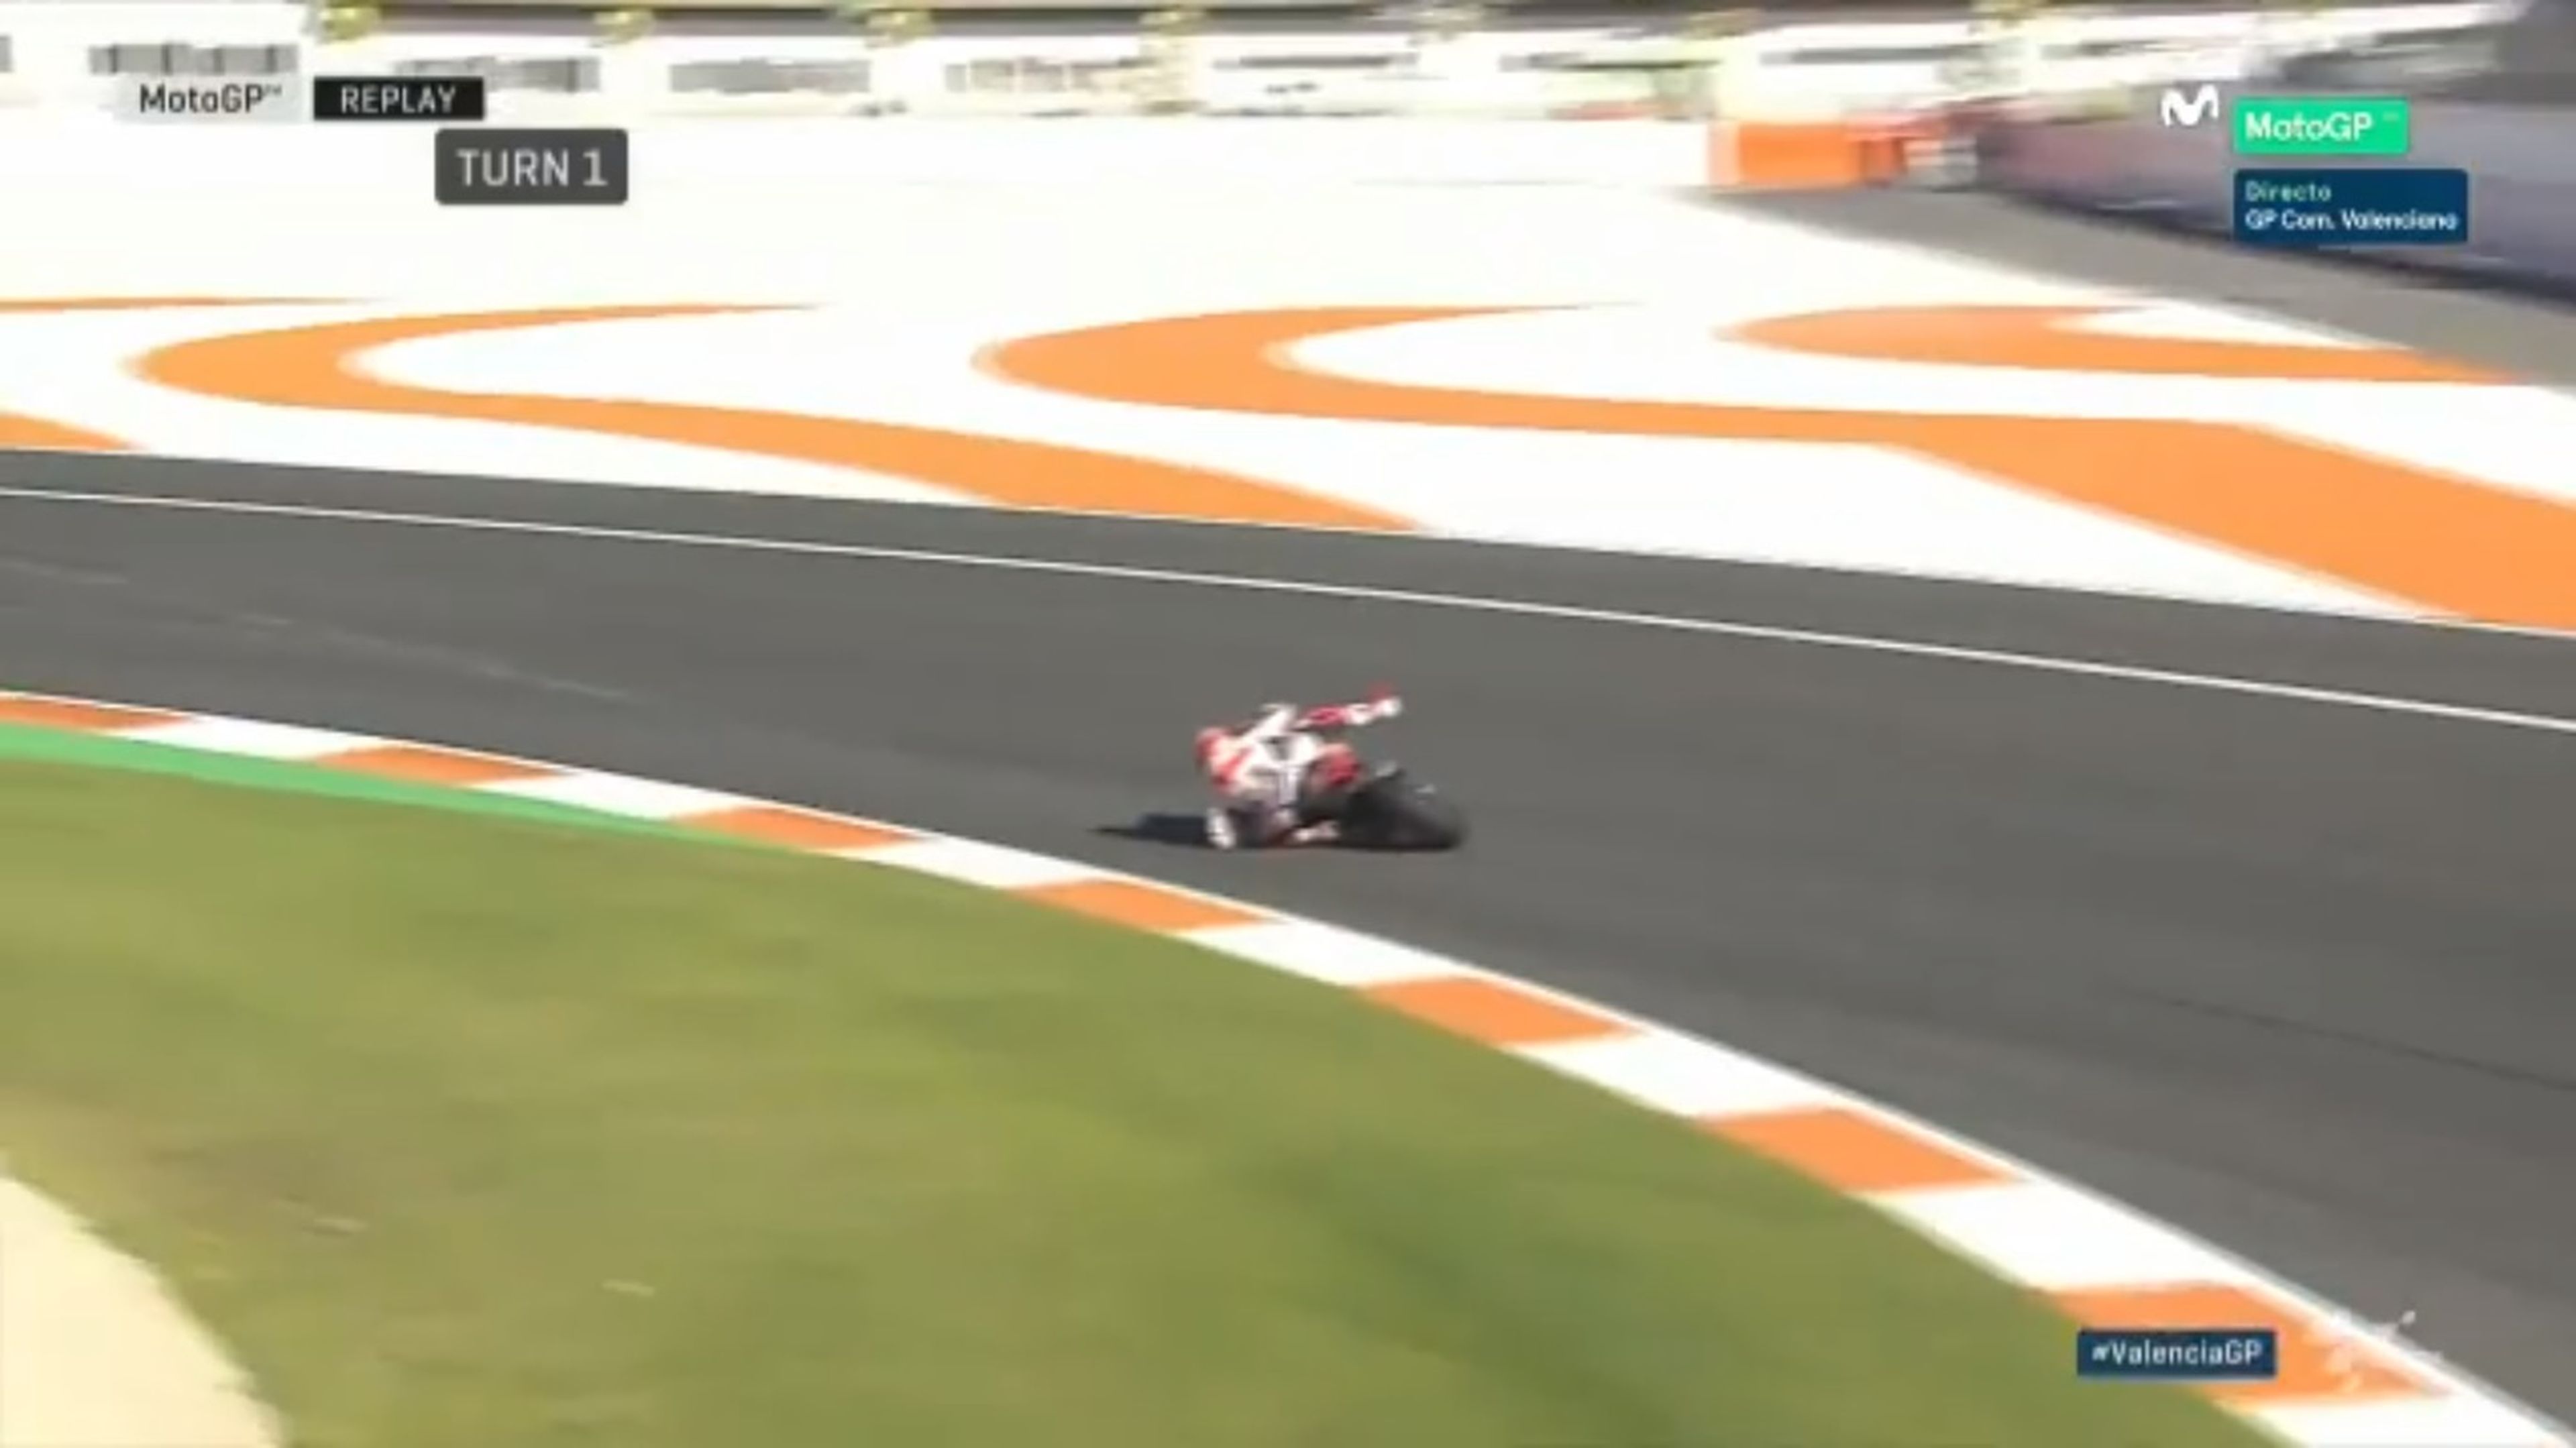 Espectacular salvada de Marc Márquez durante la carrera de MotoGP en Valencia